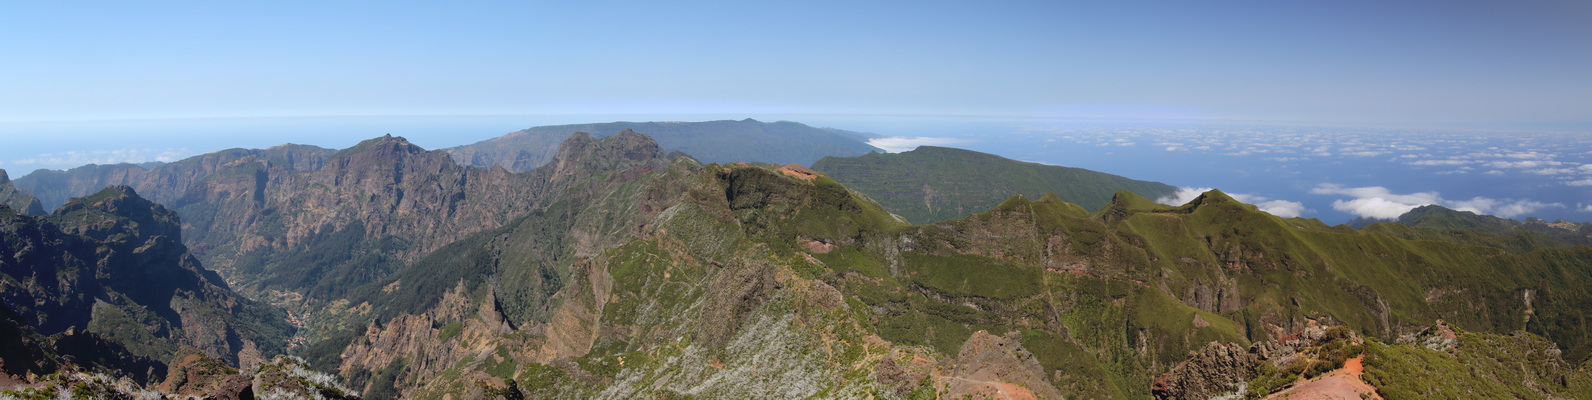 19. 8. 2021 12:09:26: Madeira 2021 - Cesta z Pico do Arieiro na Pico Ruivo (Vláďa)